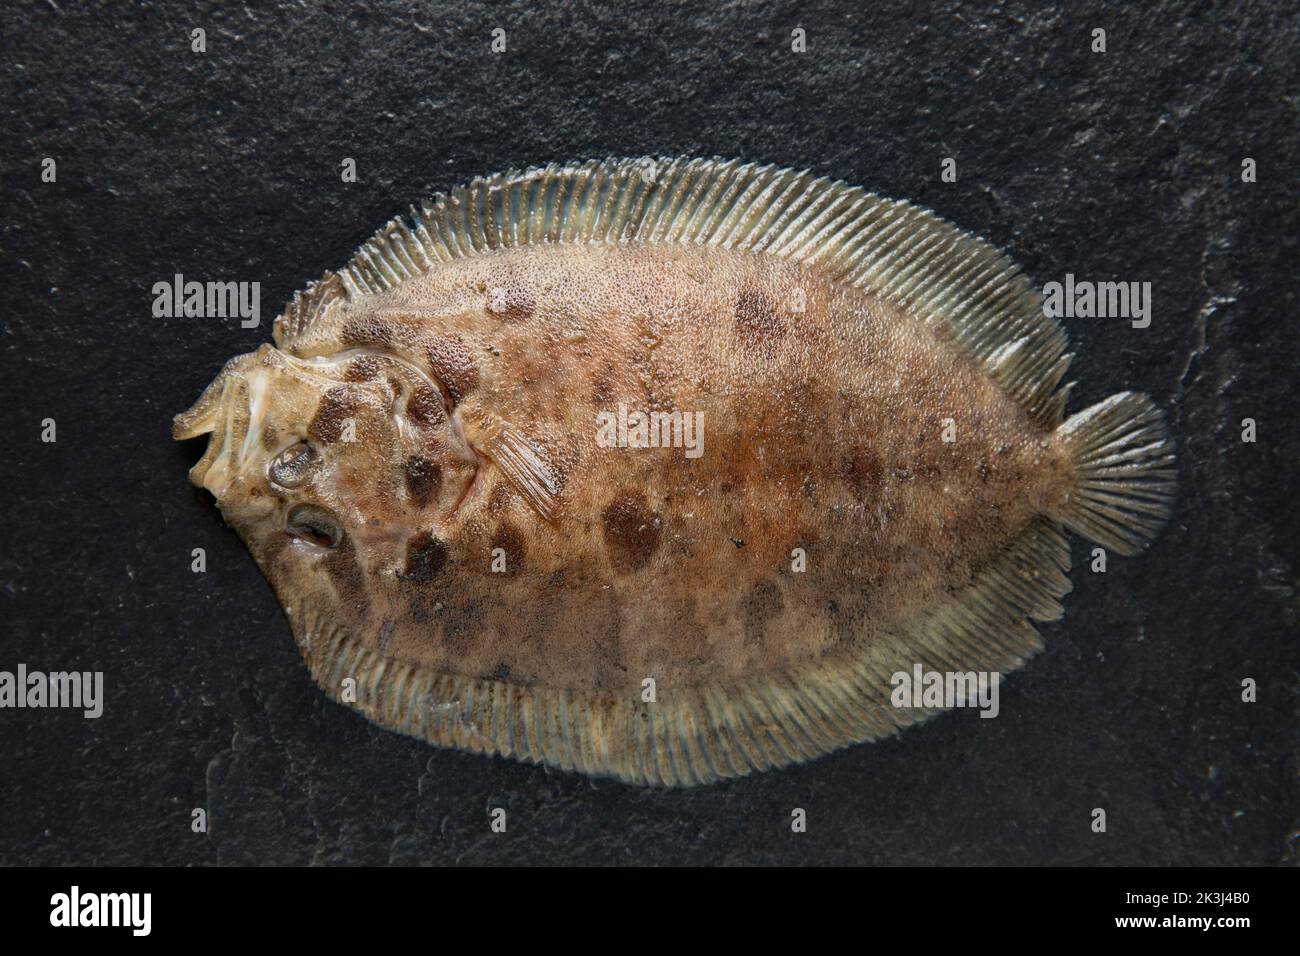 Un poisson plat de Topnit, Zeugopterus punctatus, pris dans la Manche. Arrière-plan en pierre à rondelle. Dorset Angleterre GB Banque D'Images